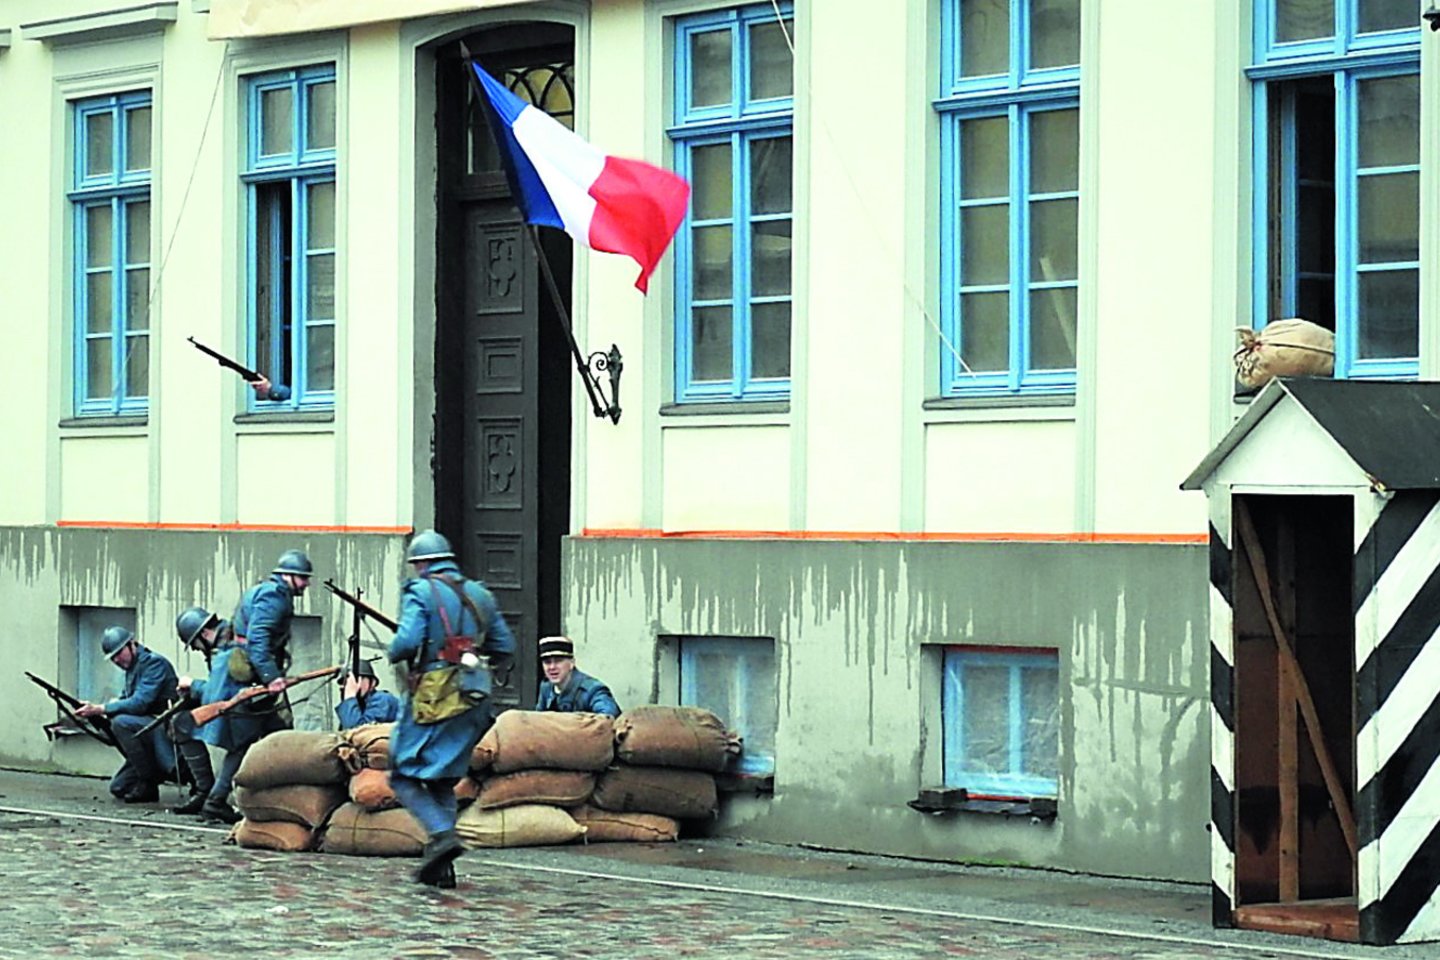  Prancūzai buvo pasirengę priešintis.<br>G.Pilaičio nuotr. 